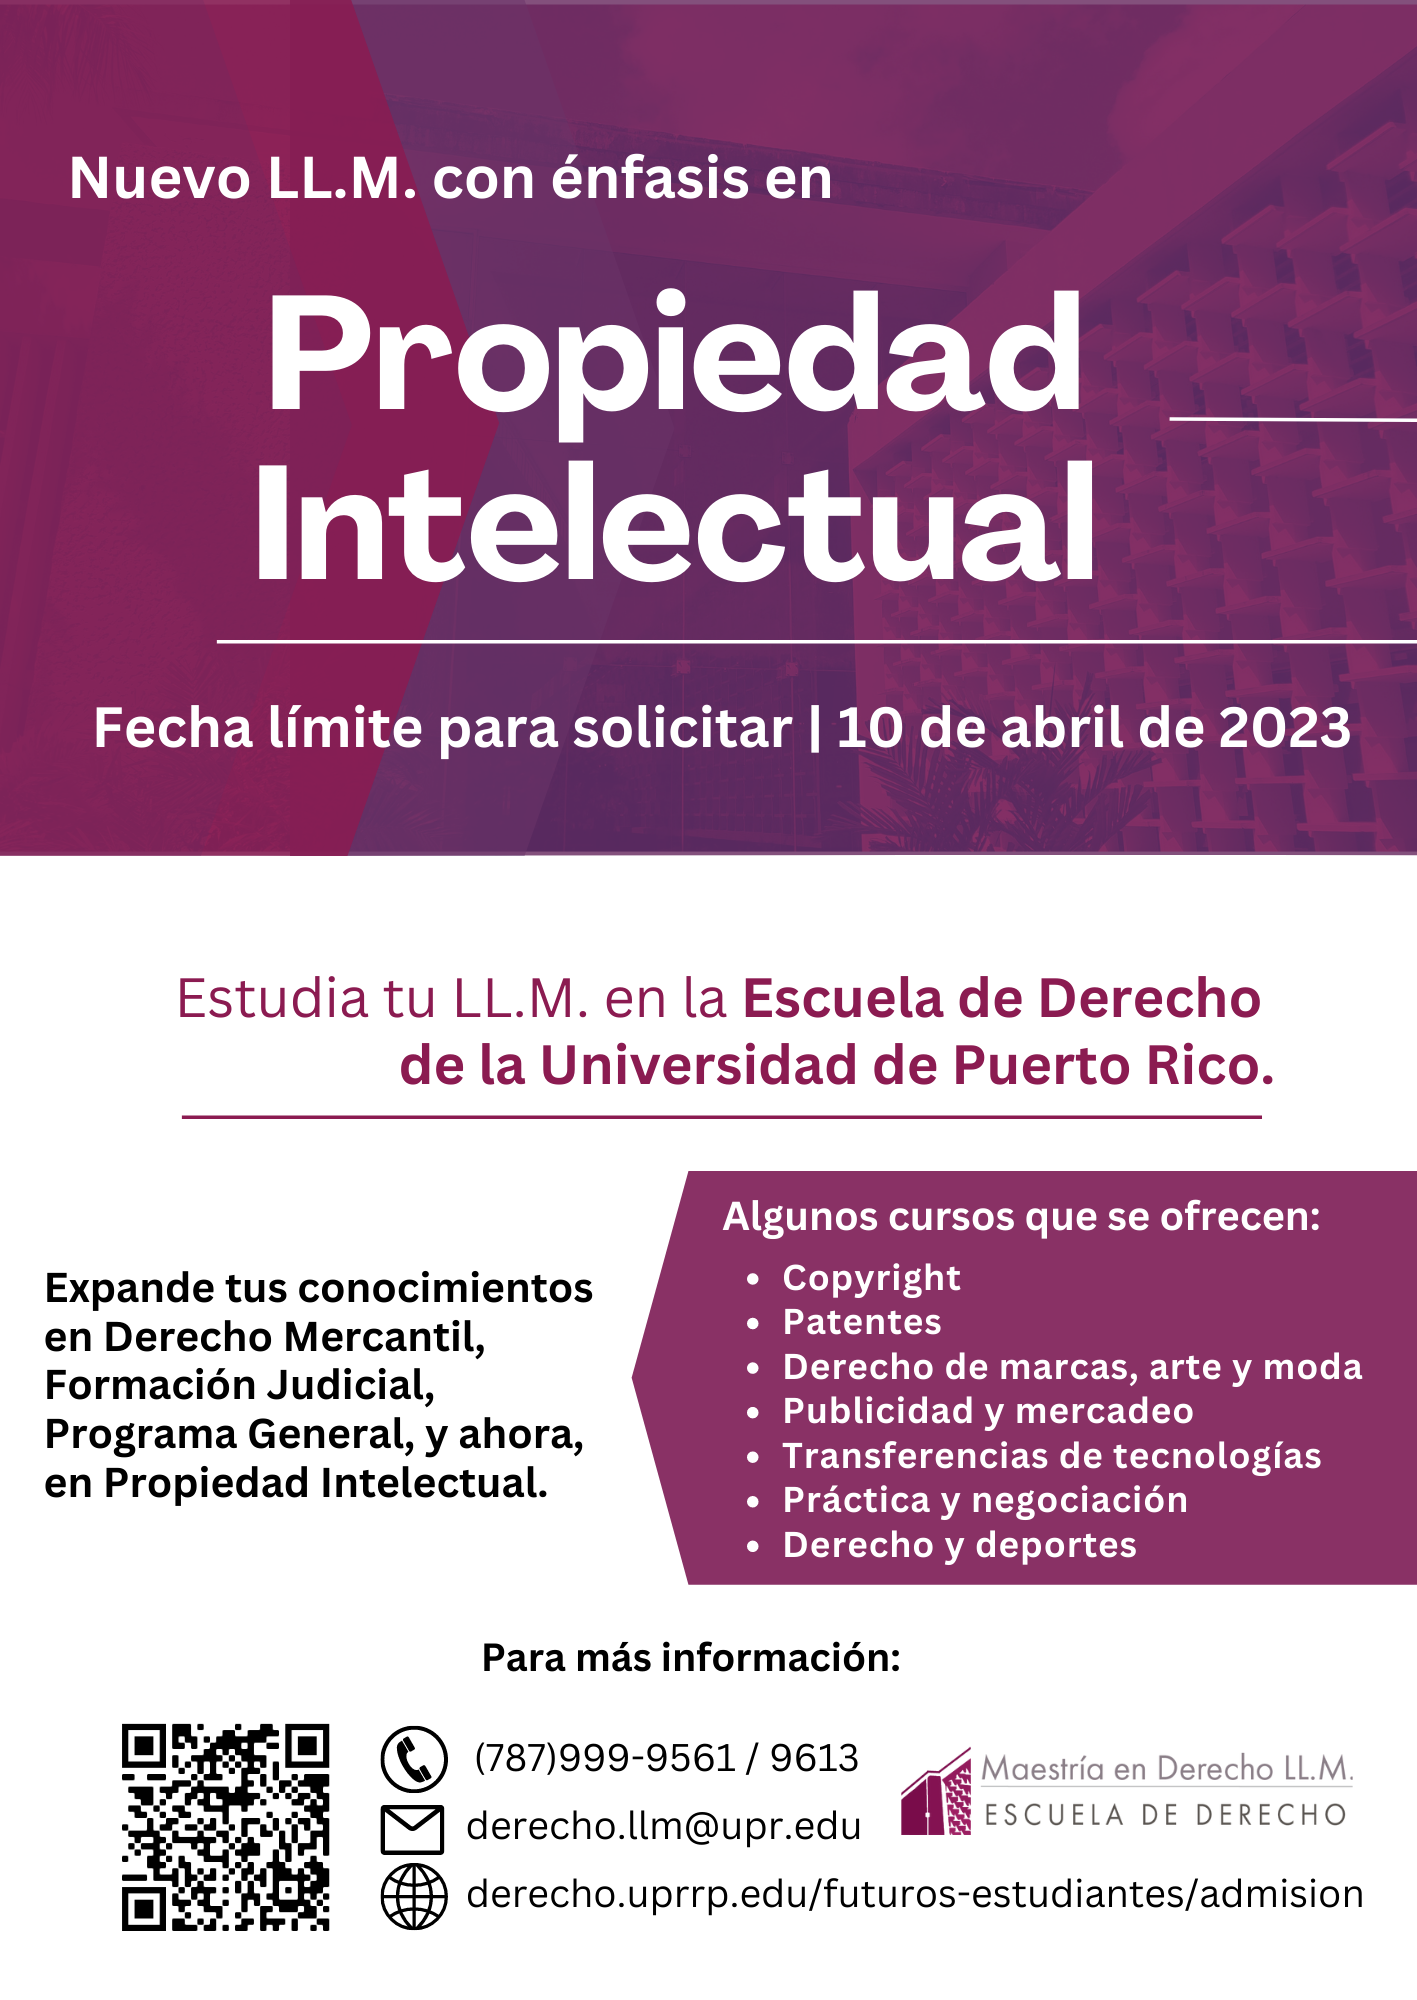 Image: Promoción Nuevo énfasis en el Programa LL.M. (Maestría en Derecho) en Propiedad Intelectual.